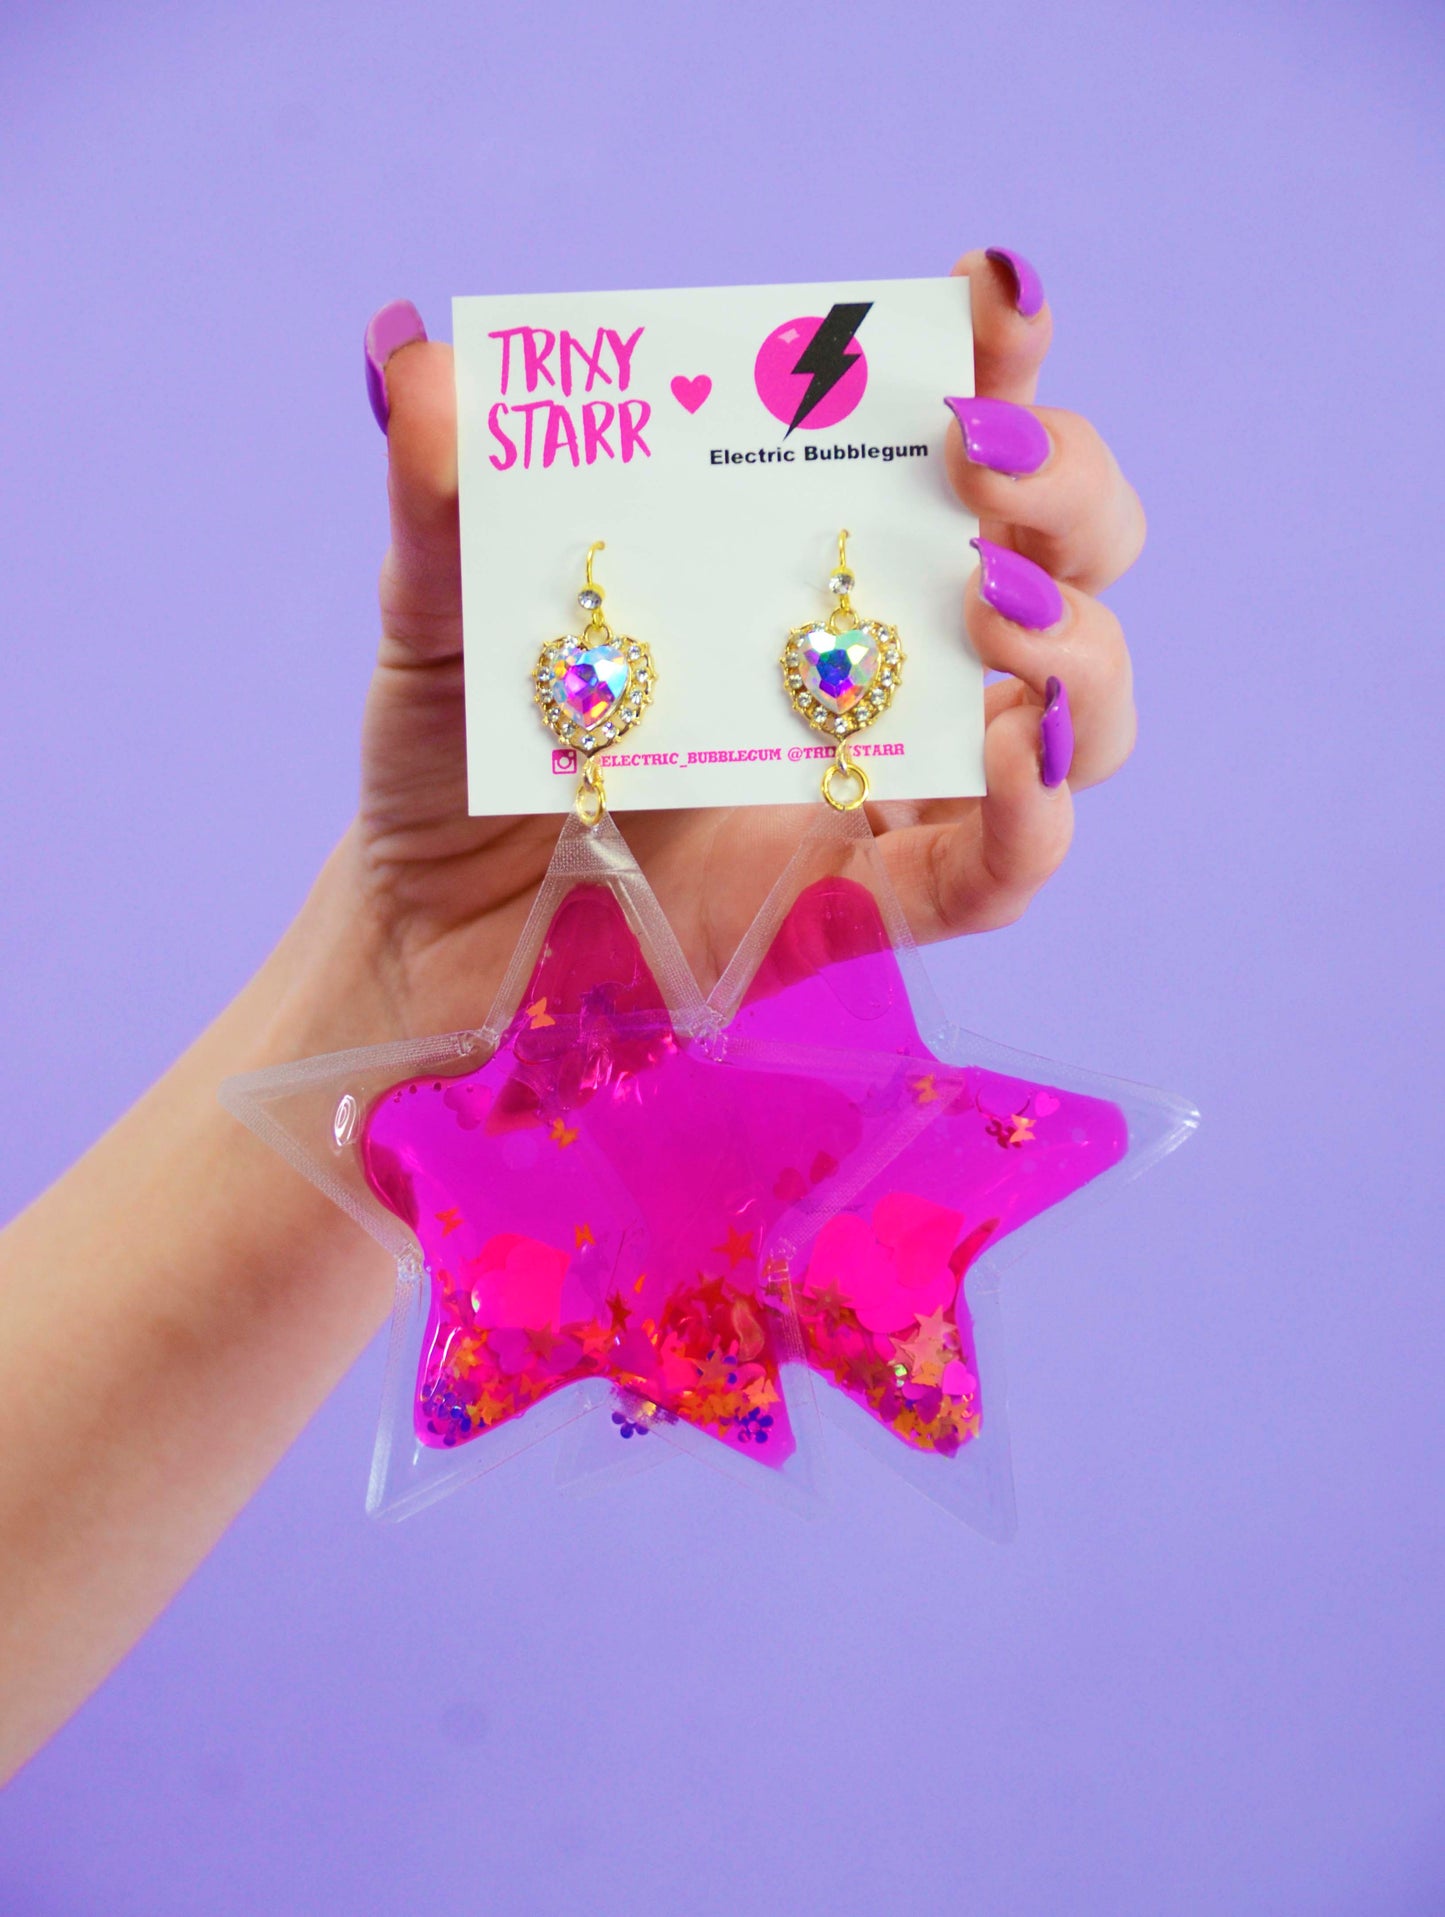 Radiant Angel Star Earrings - Pink